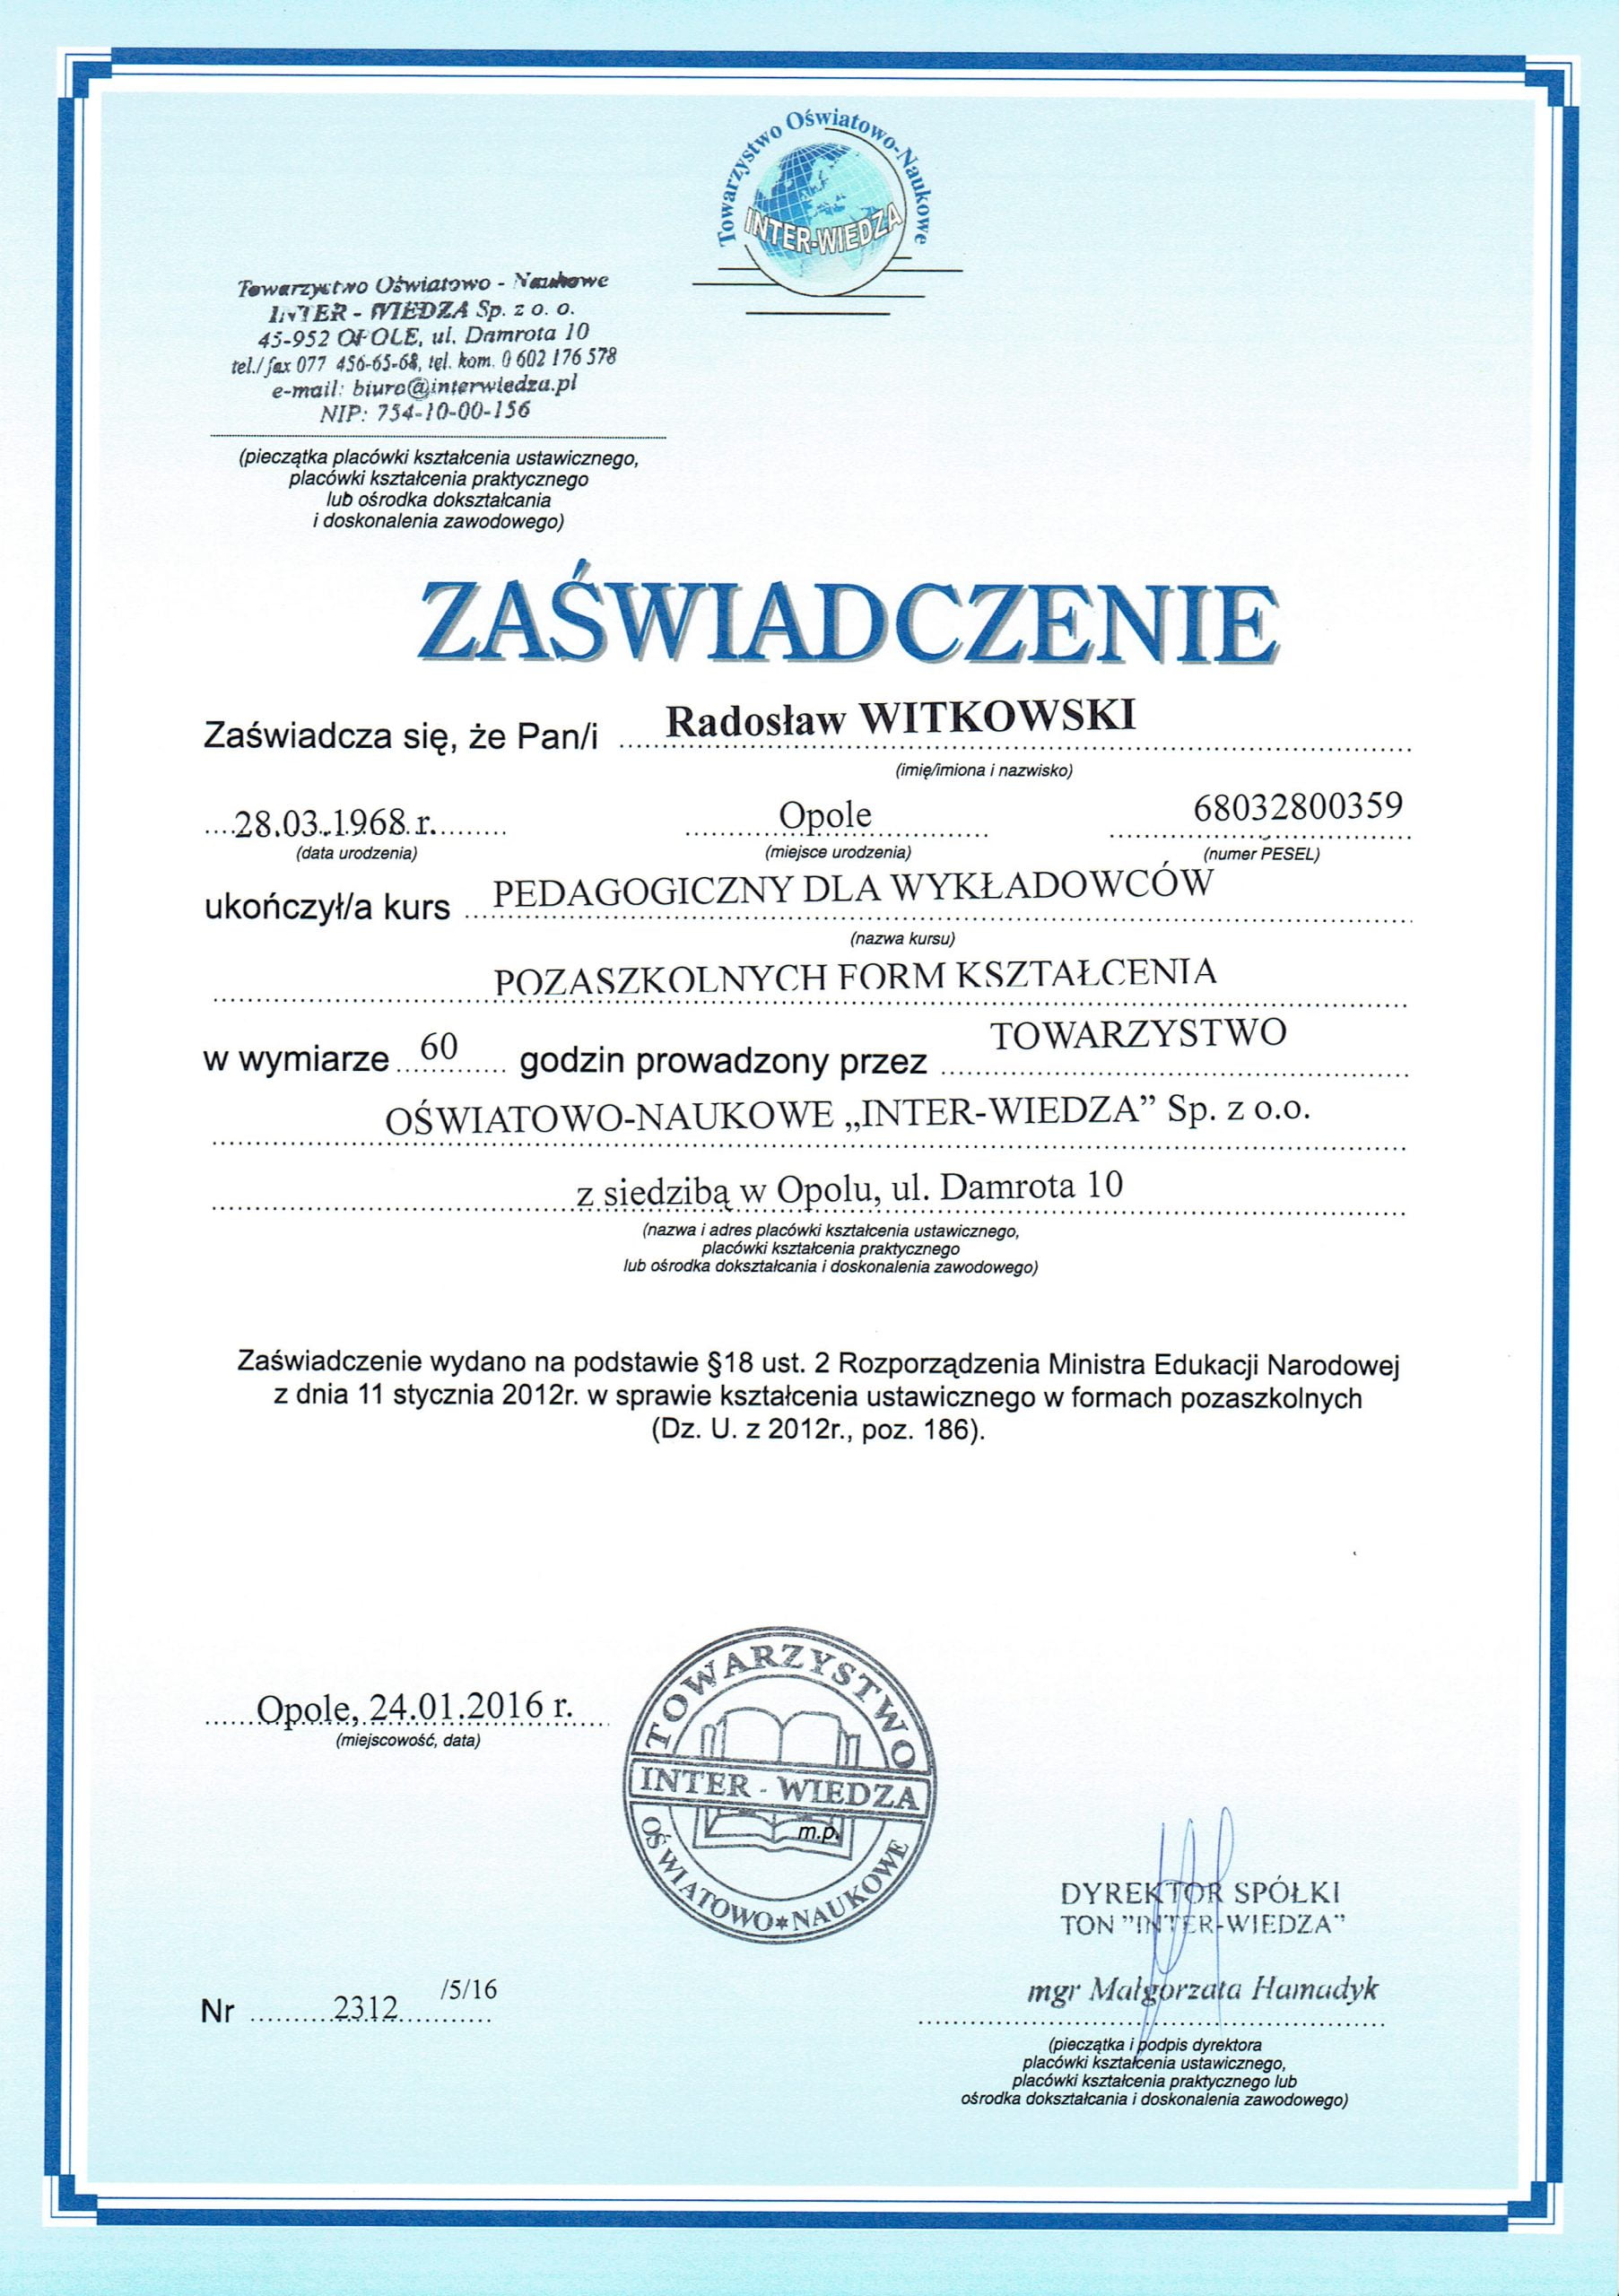 Radosław Witkowski certyfikat 108